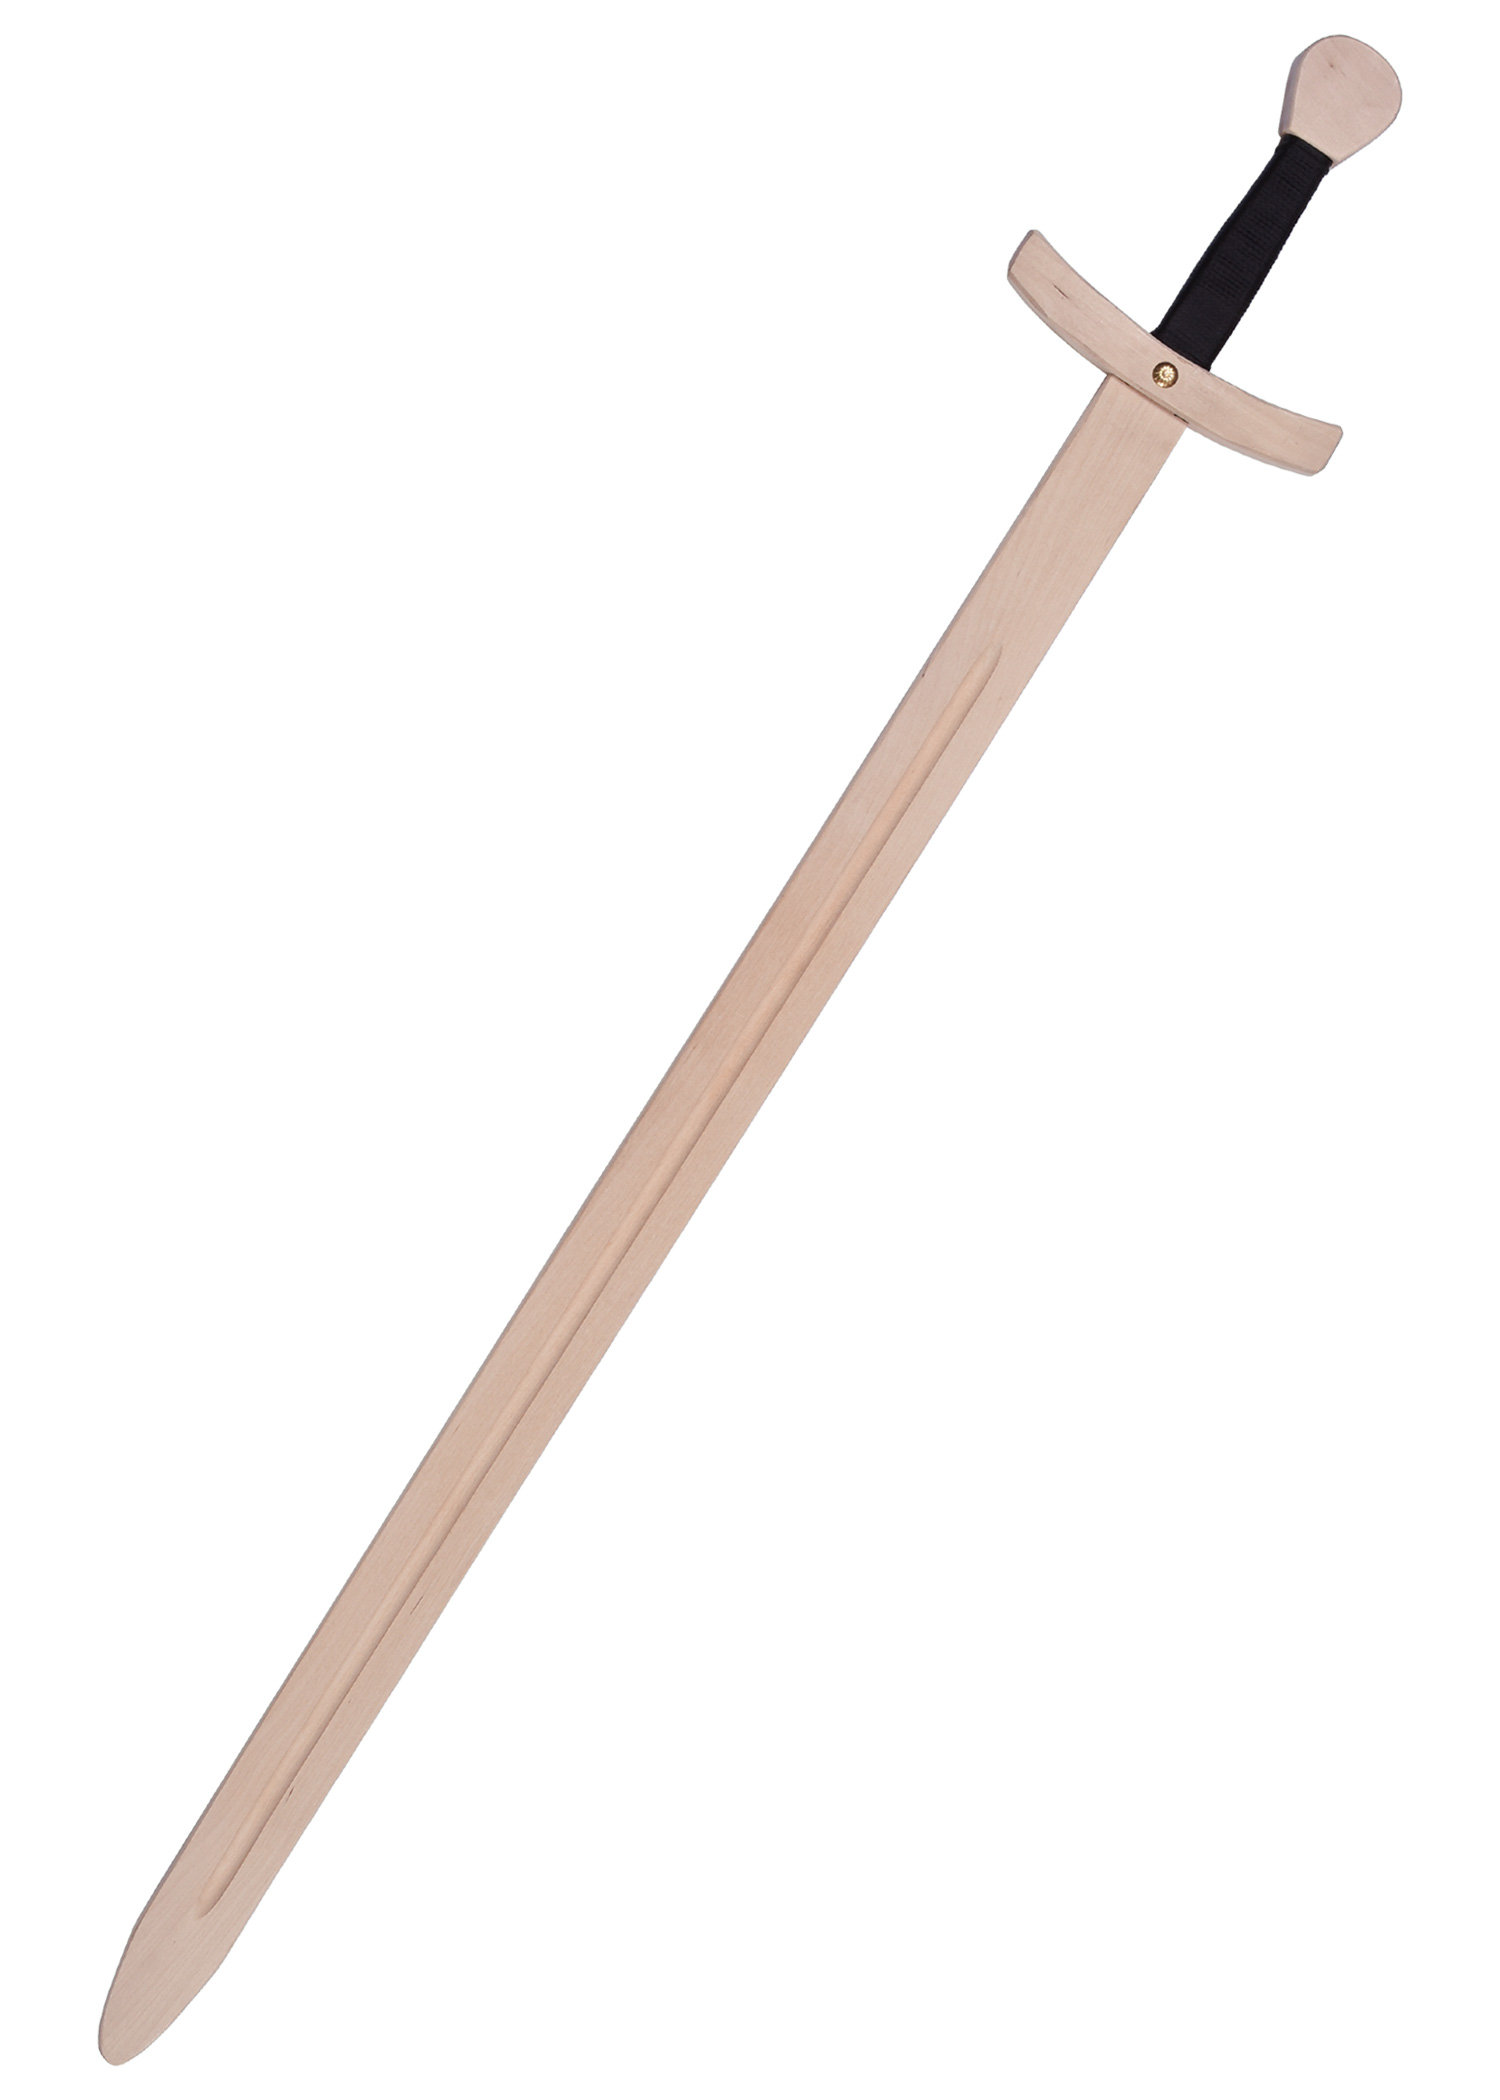 Kinder Ritterschwert Kunibert aus Holz, verschiedene Längen, Länge 65 cm